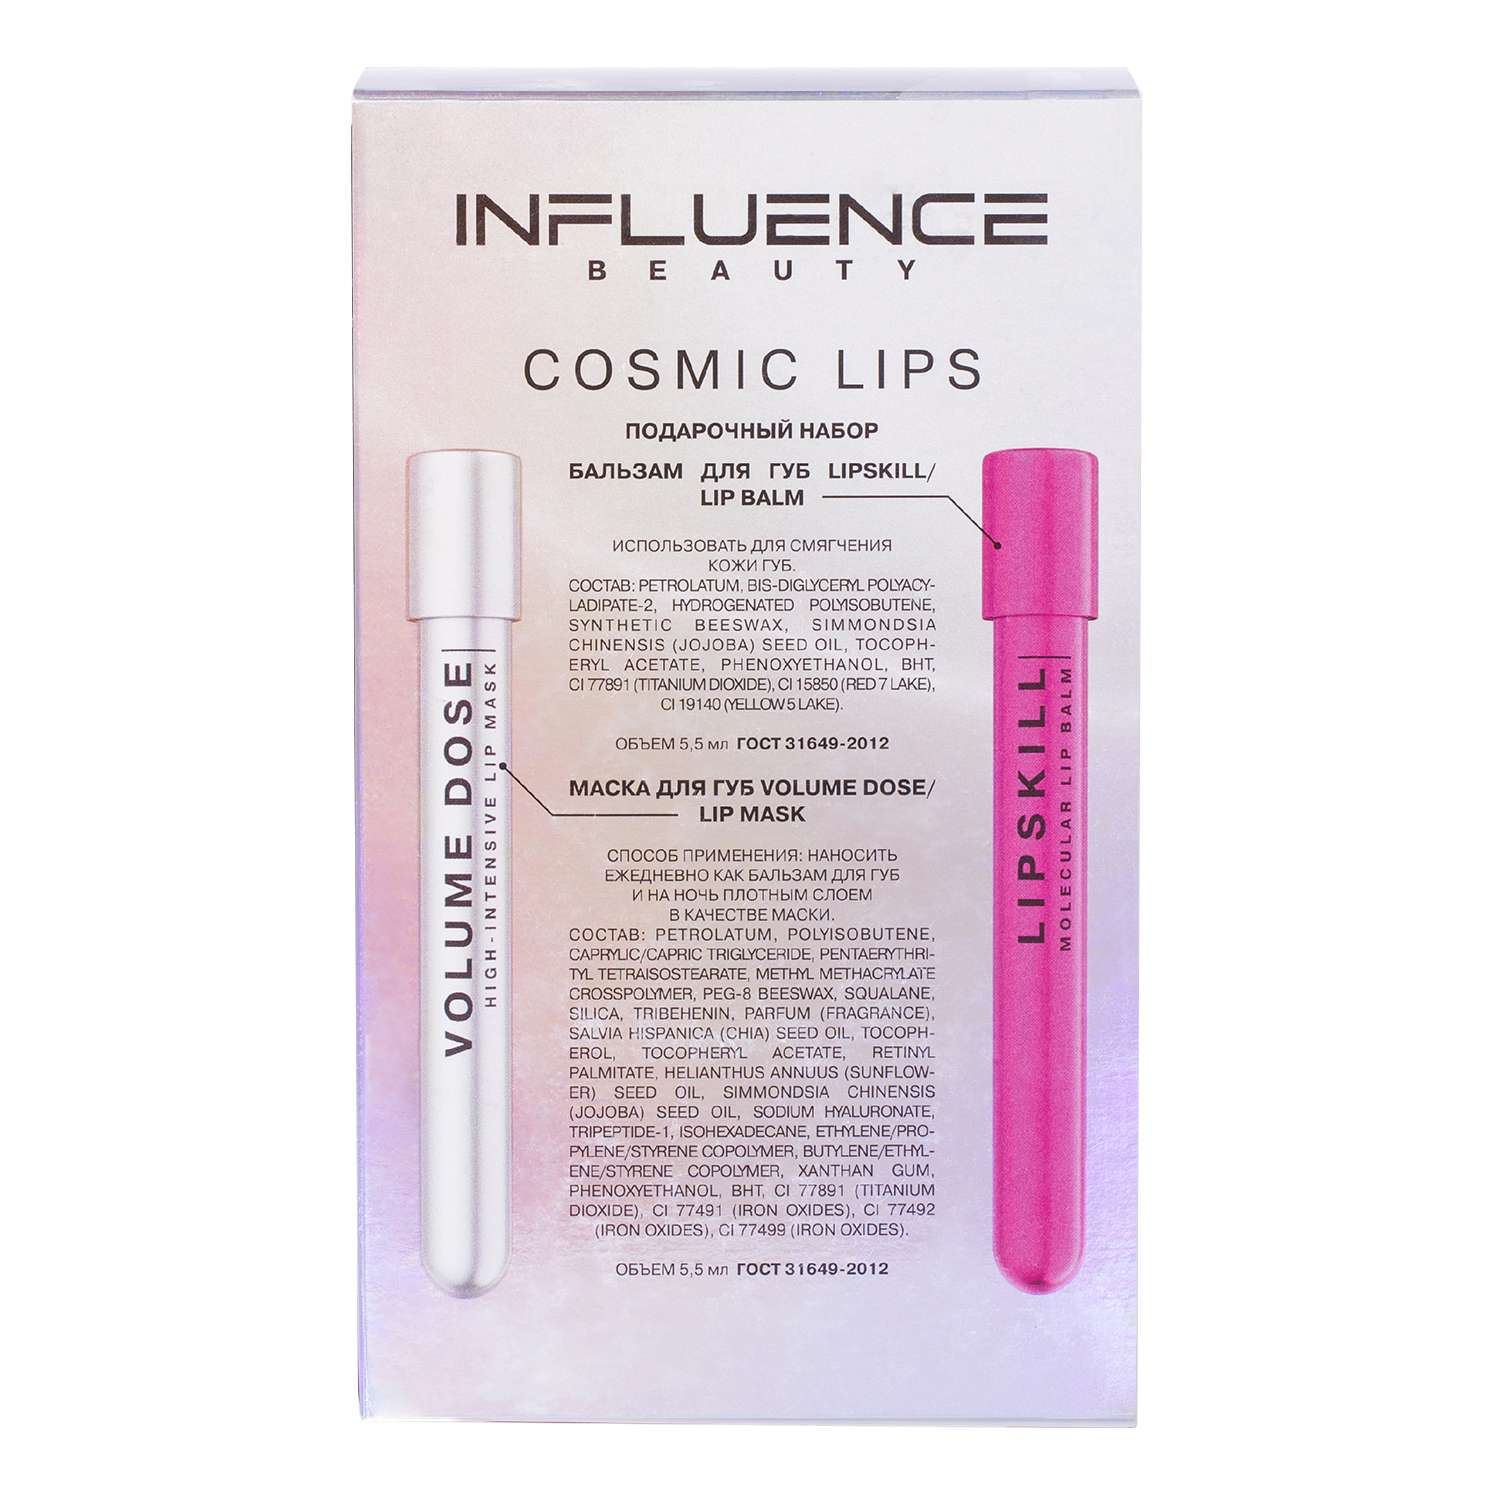 Подарочный набор Influence Beauty Бальзам для губ Lipskill прозрачный и маска для губ Volume Dose для нежных ухоженных губ - фото 2